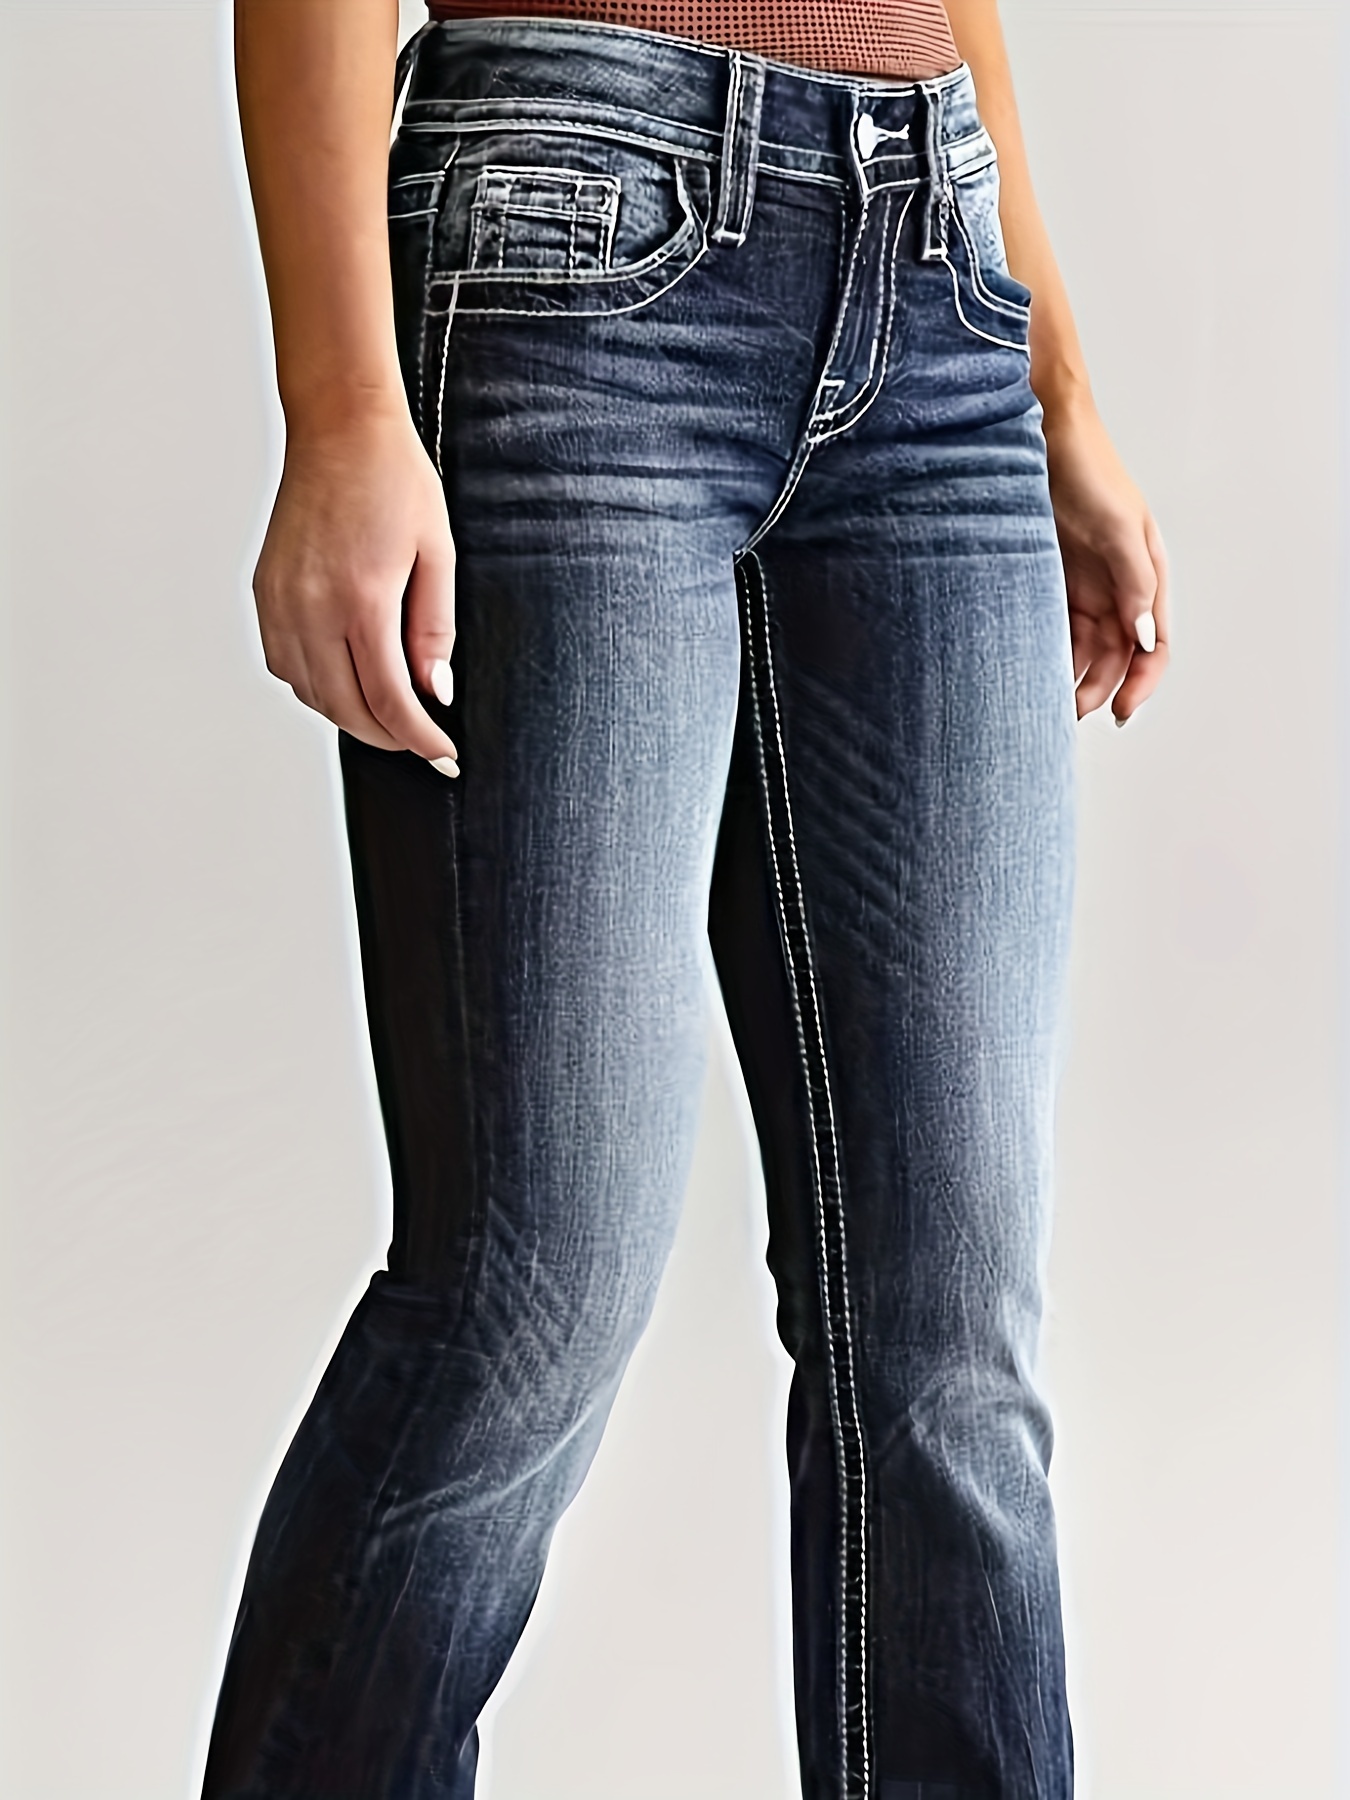 Double Button Fashion Bootcut Jeans, Flap Pockets *-Stretch Denim Pants,  Women's Denim Jeans & Clothing